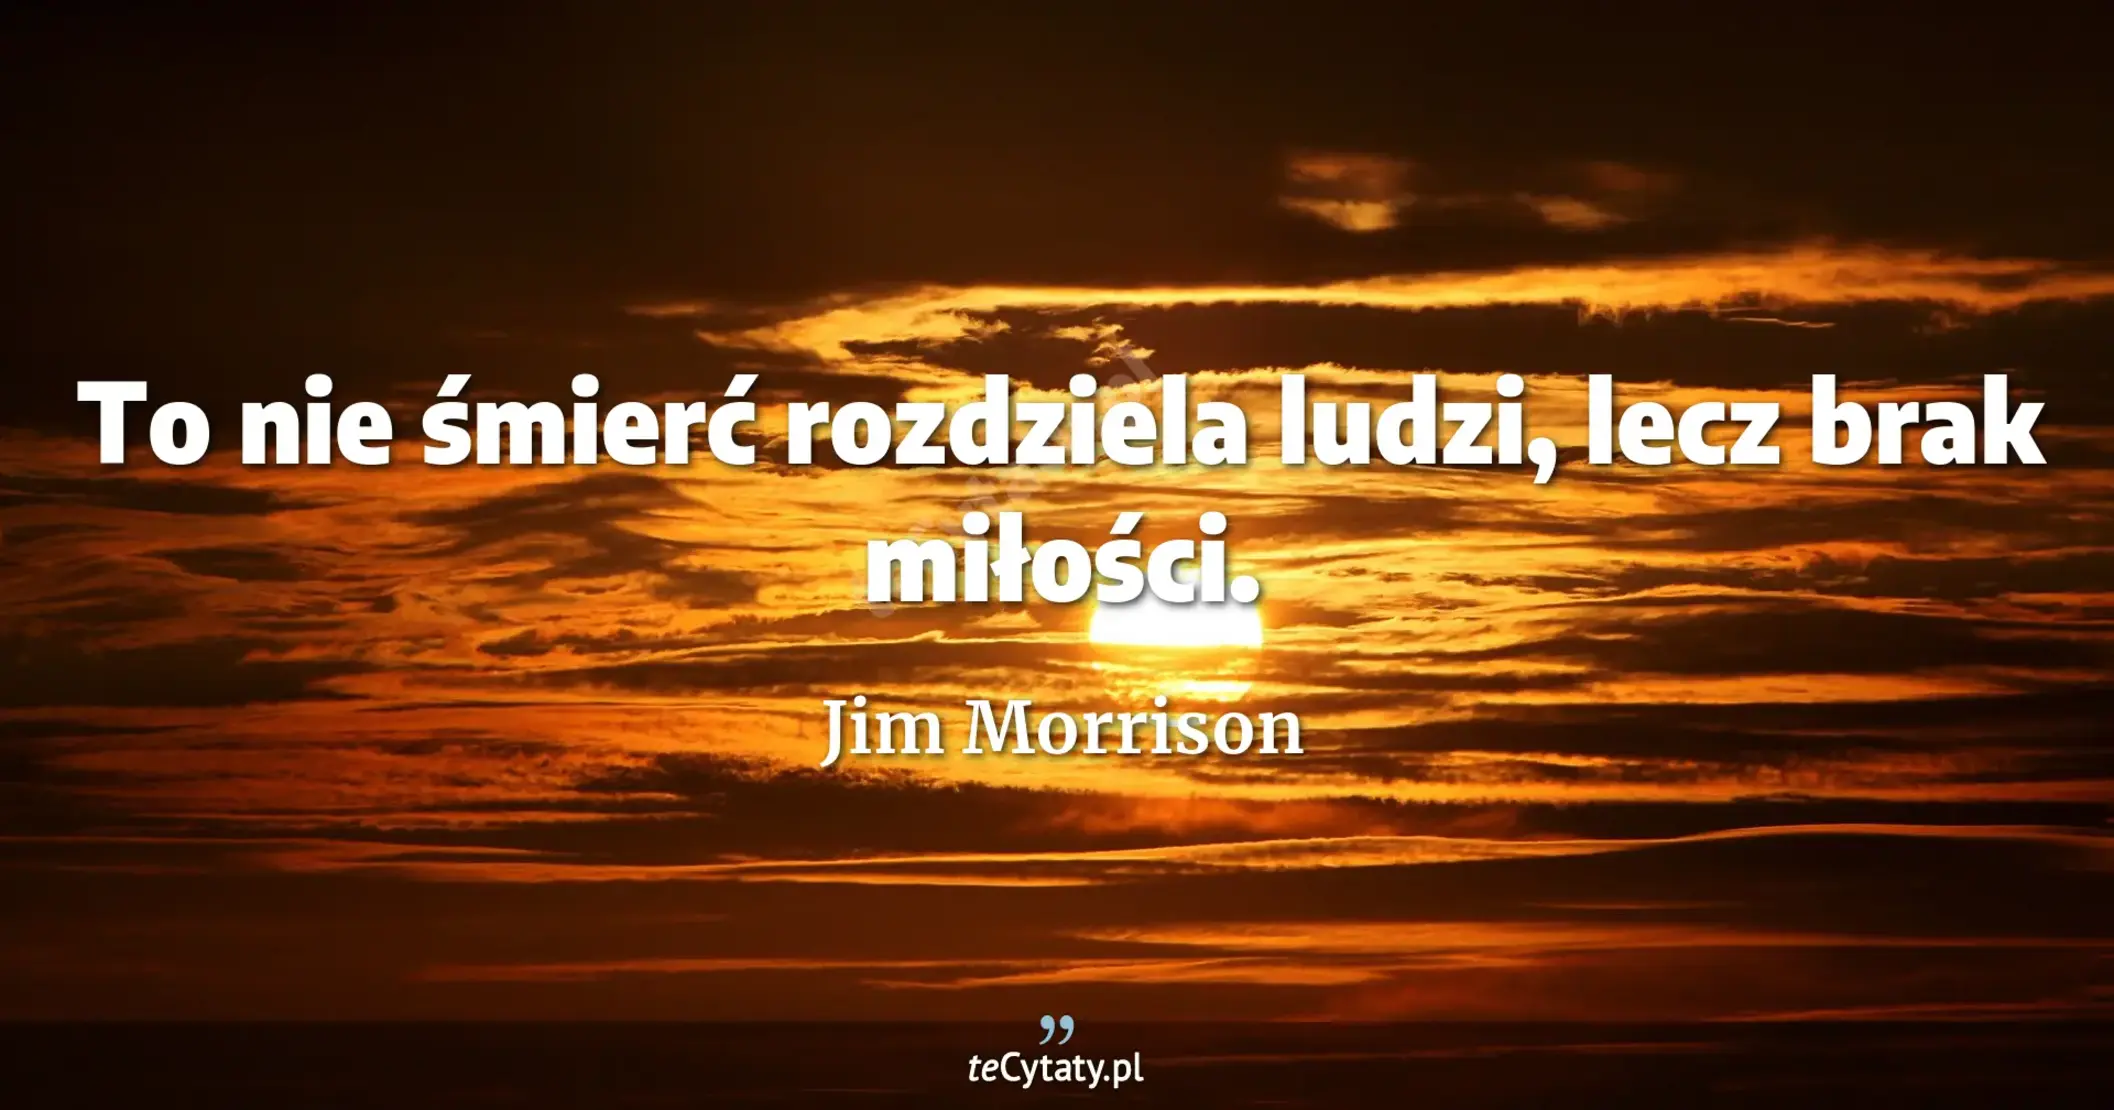 To nie śmierć rozdziela ludzi, lecz brak miłości. - Jim Morrison